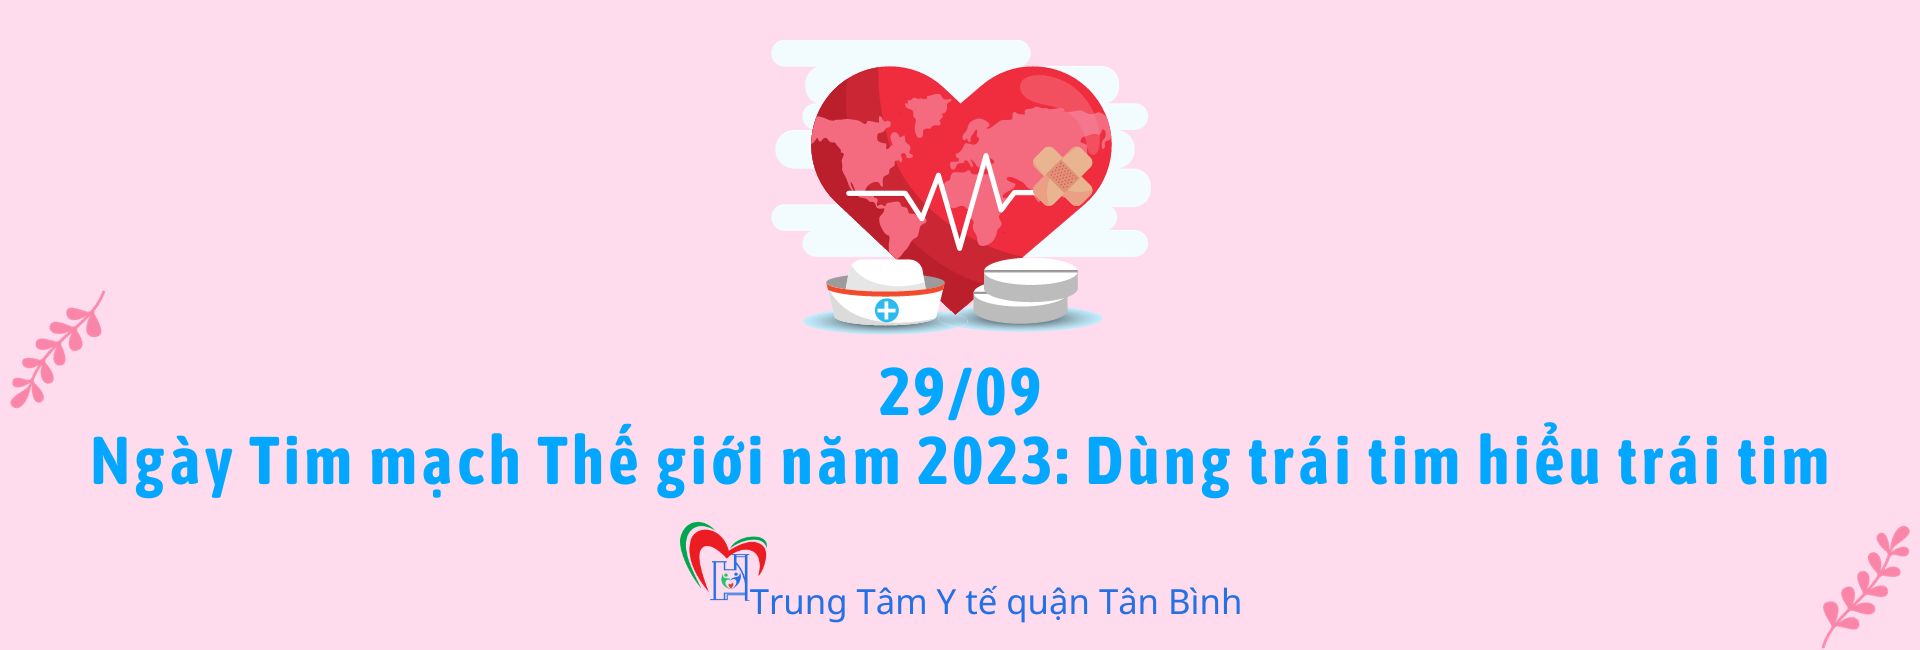 Ngày Tim mạch Thế giới năm 2023: Dùng trái tim hiểu trái tim